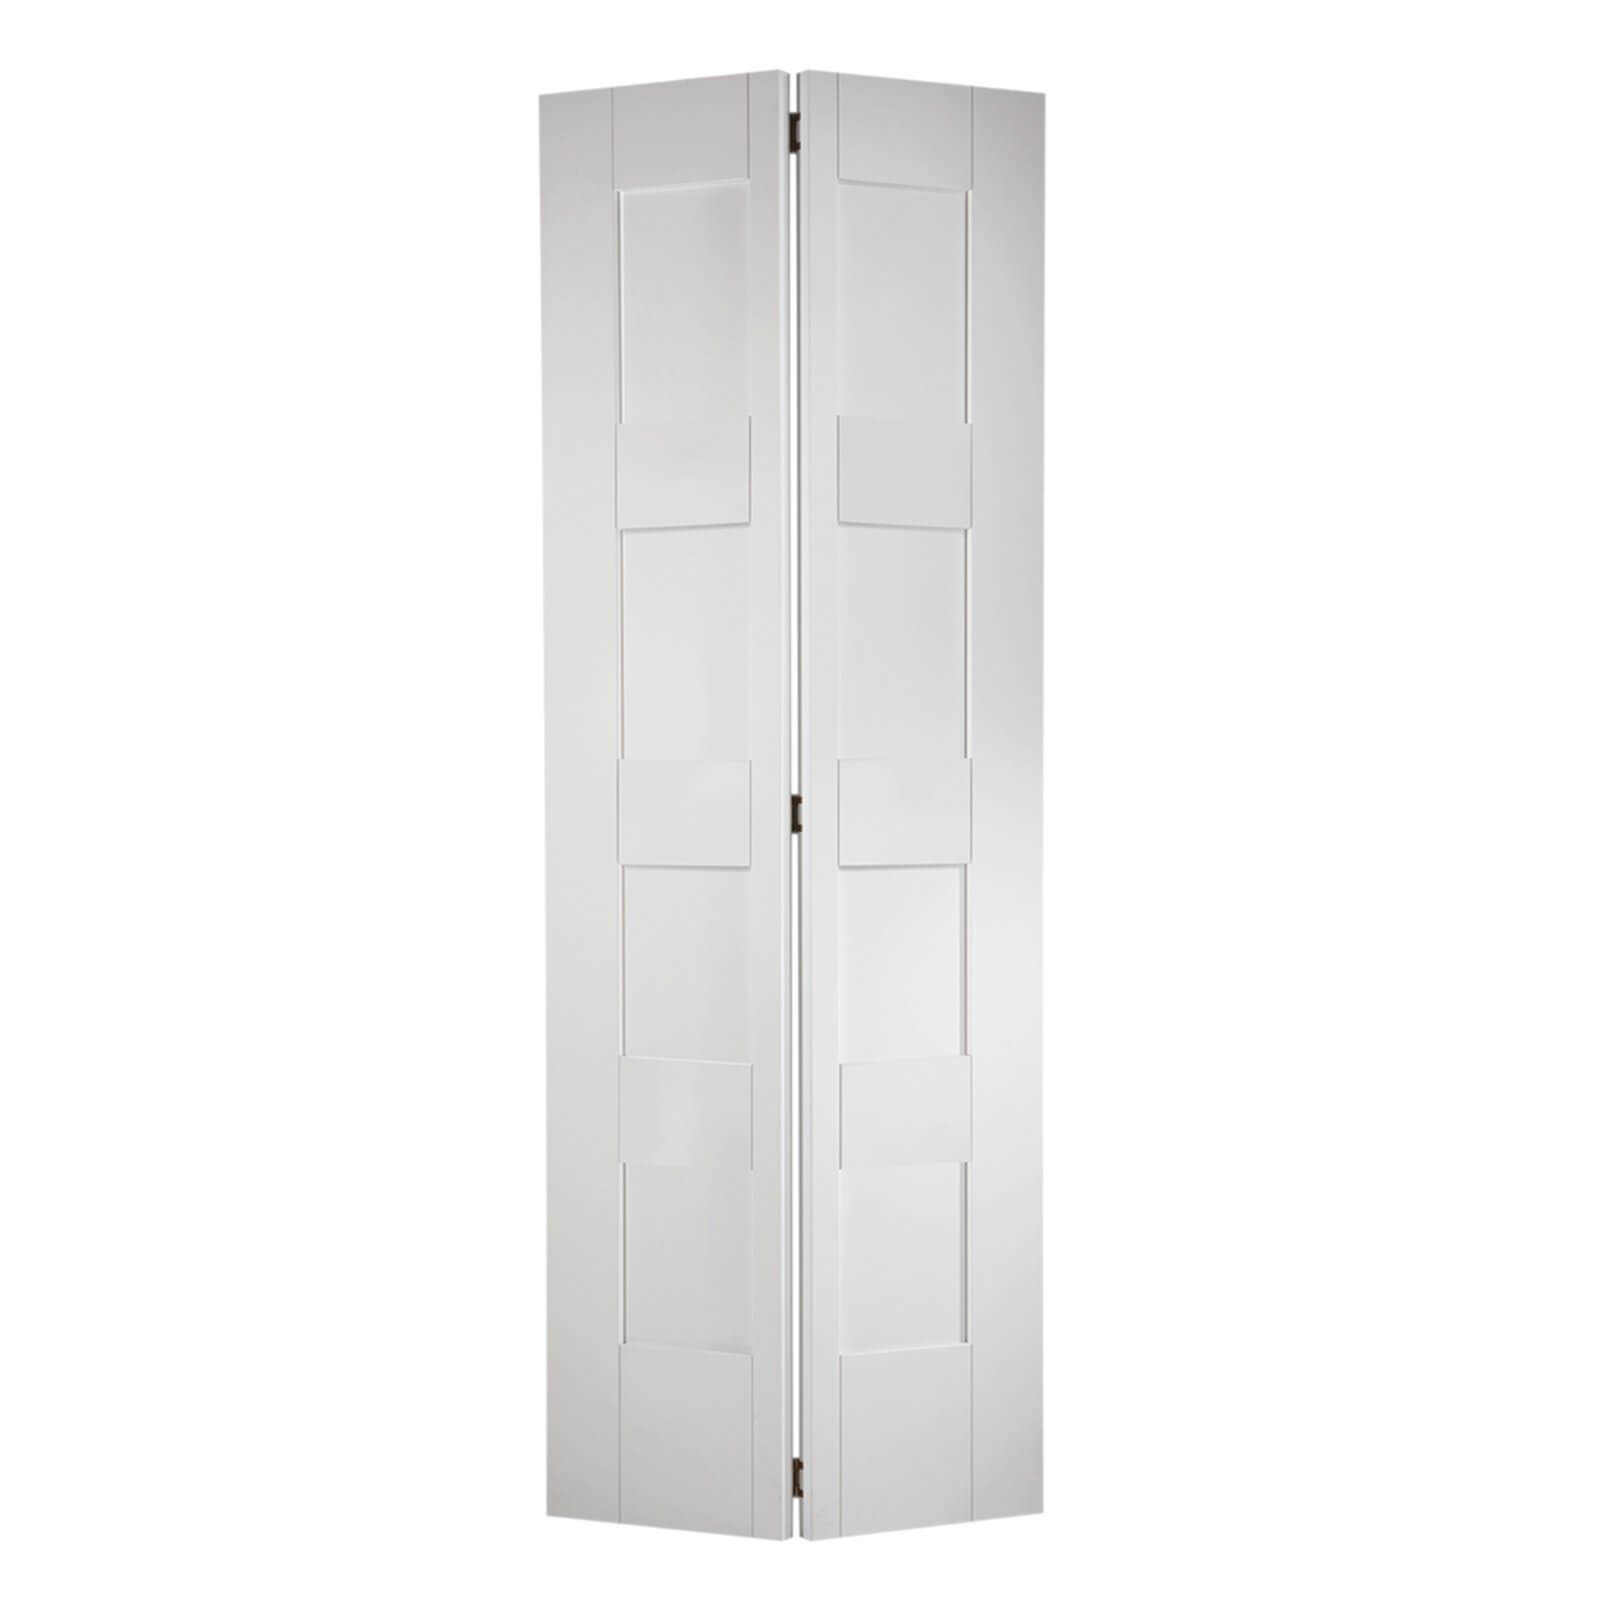 Shaker Internal Bi-fold Primed White 8 Panel Door - 686 x 1981mm